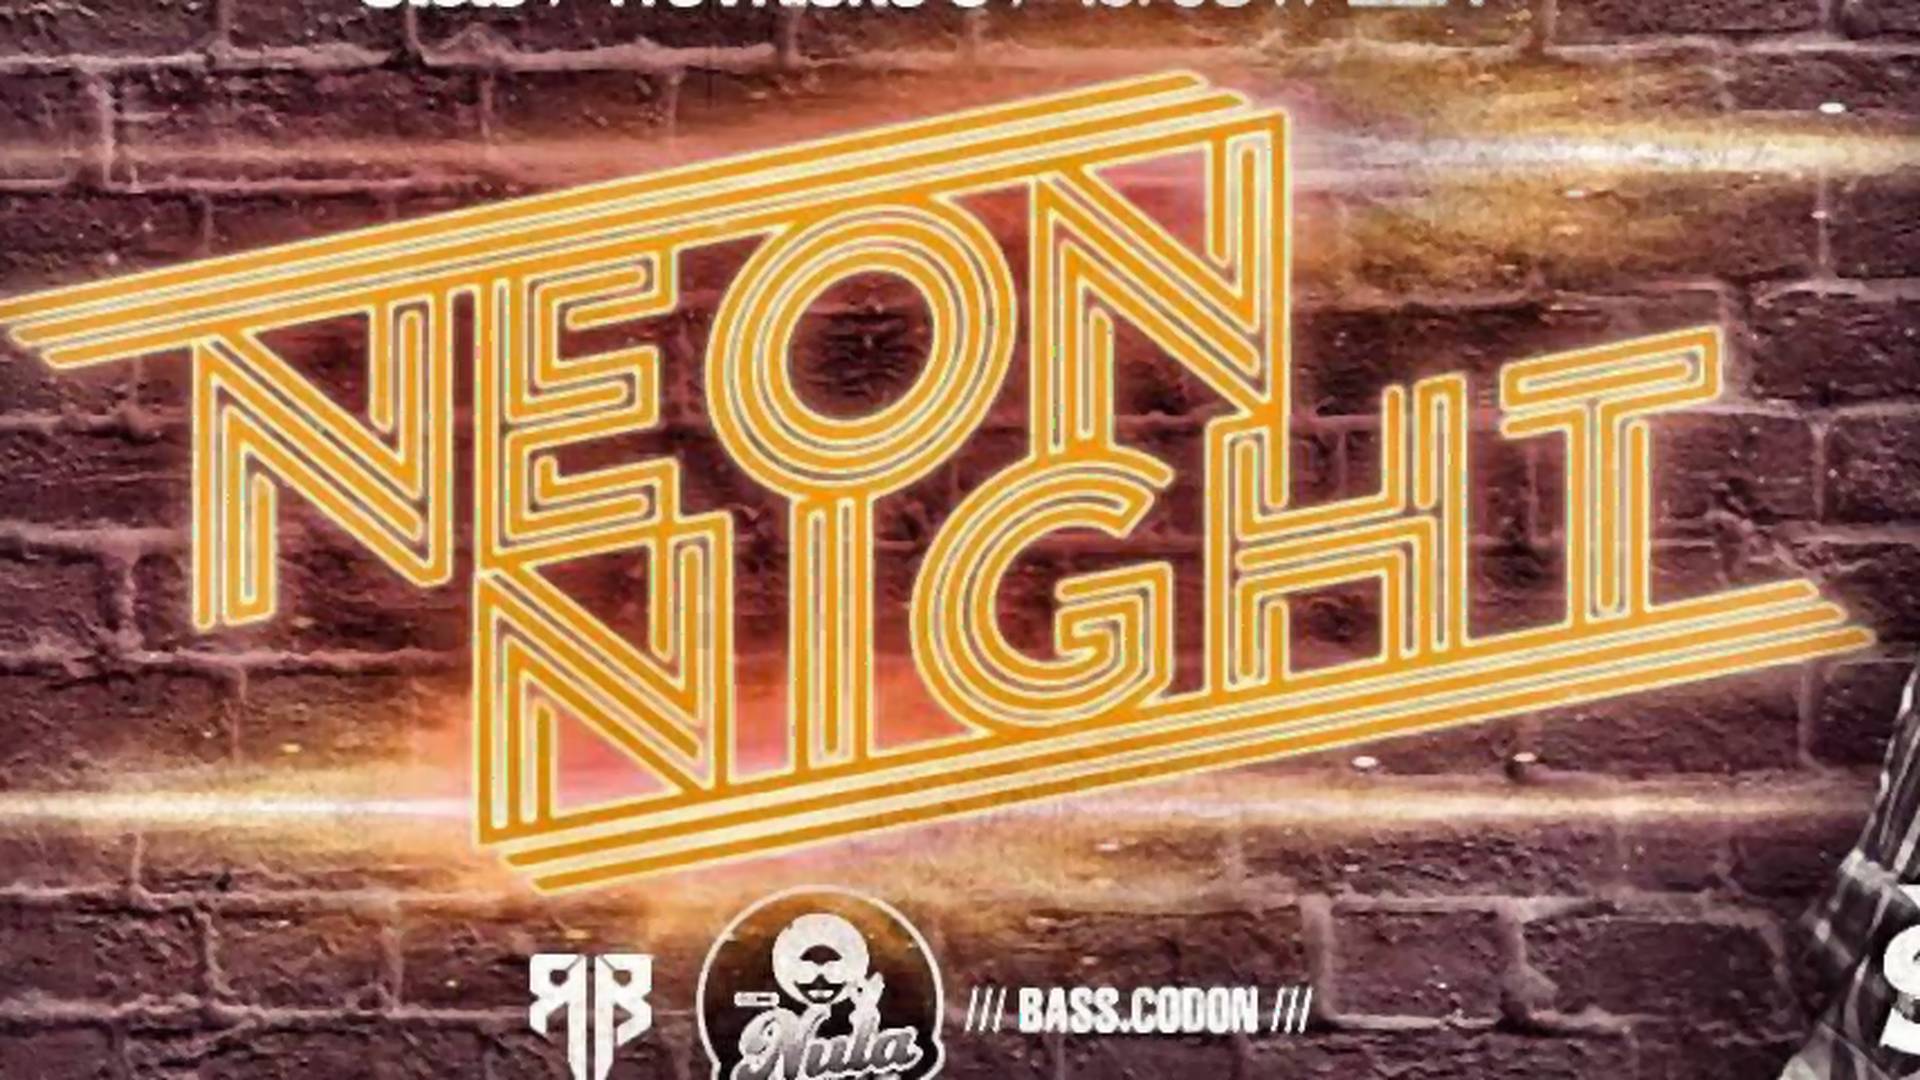 Preporuka večeri: Neon Nights!